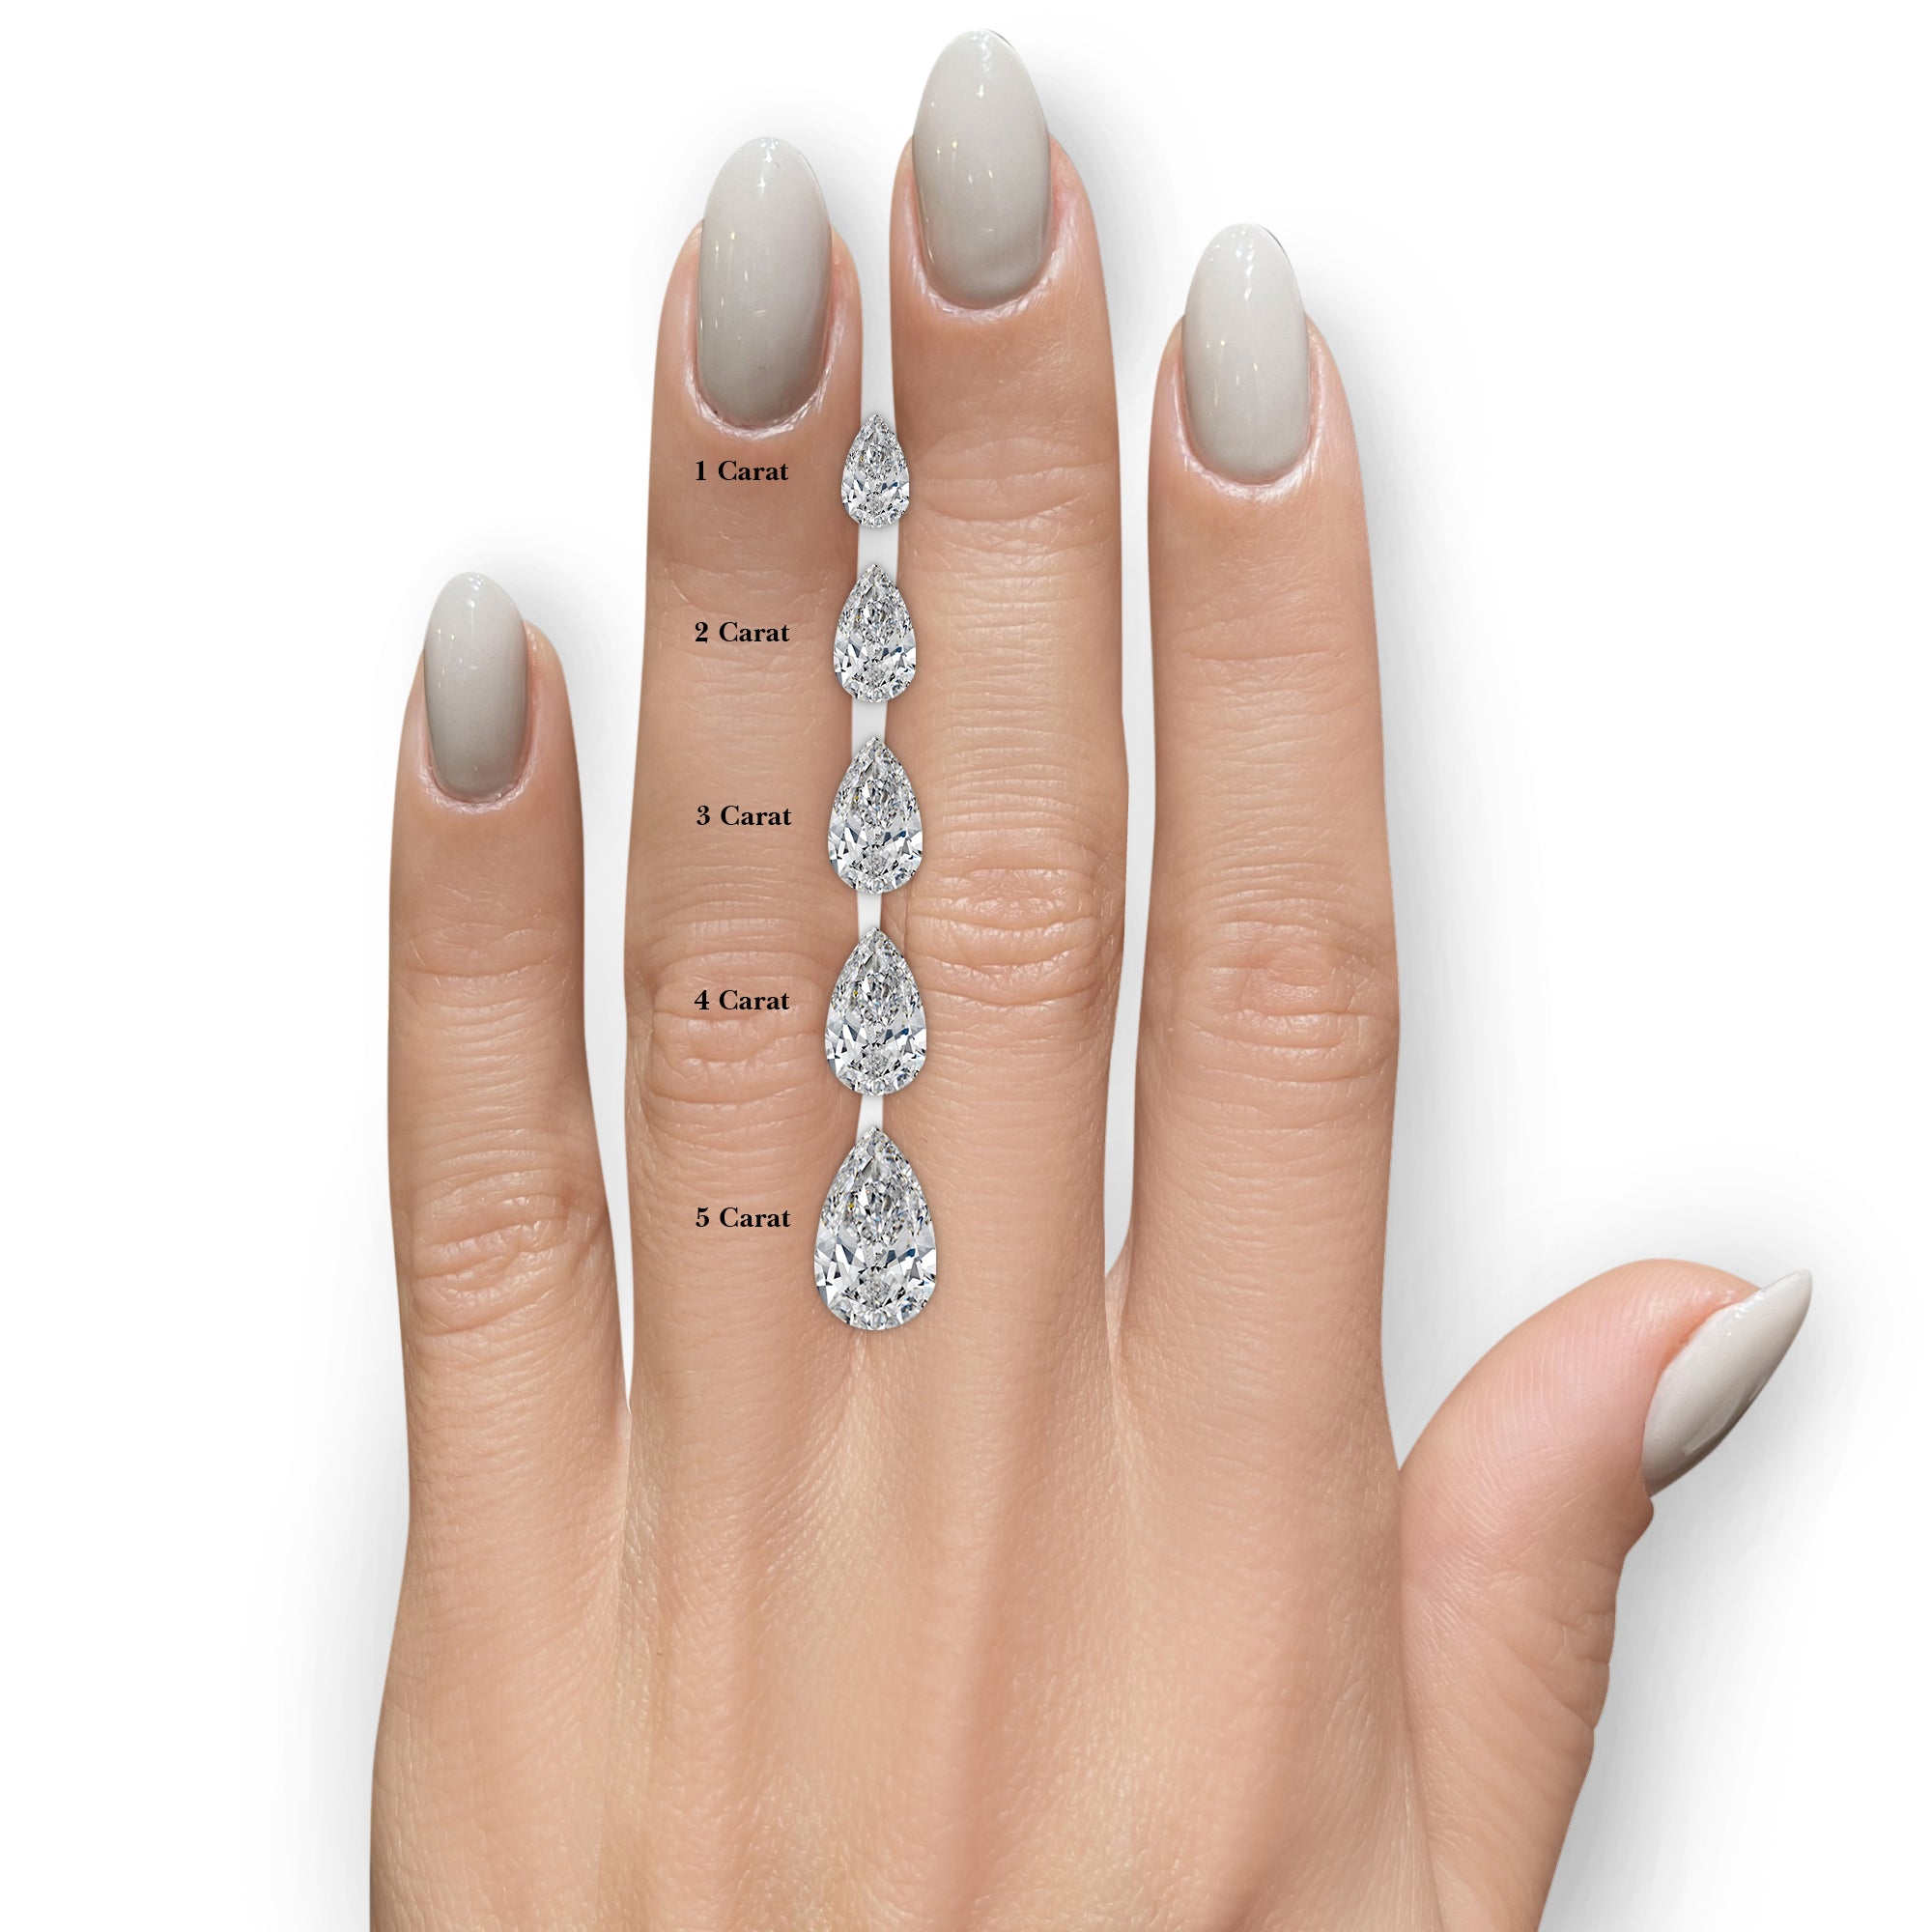 Beverly Diamond Engagement Ring -18K White Gold